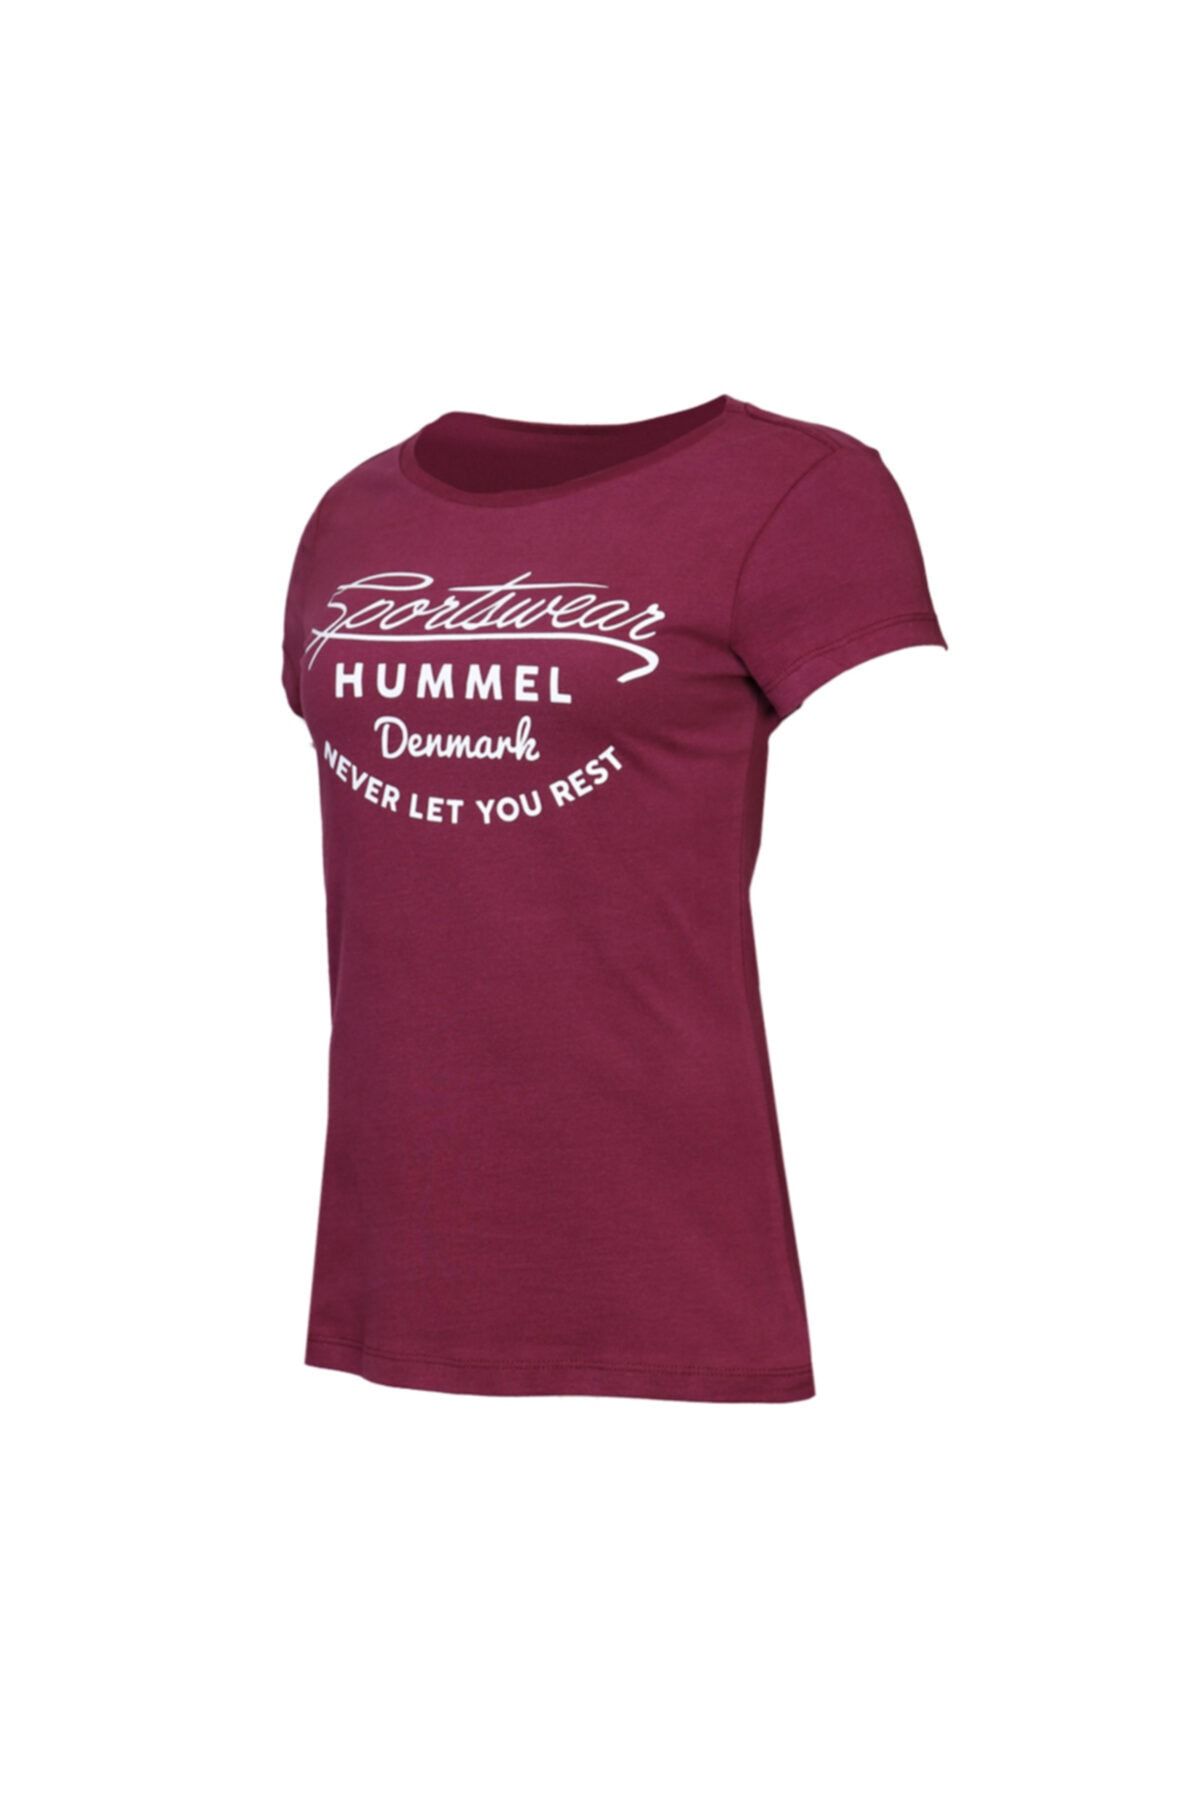 hummel HMLKUMIN T-SHIRT S/S Mor Kadın T-Shirt 100580984